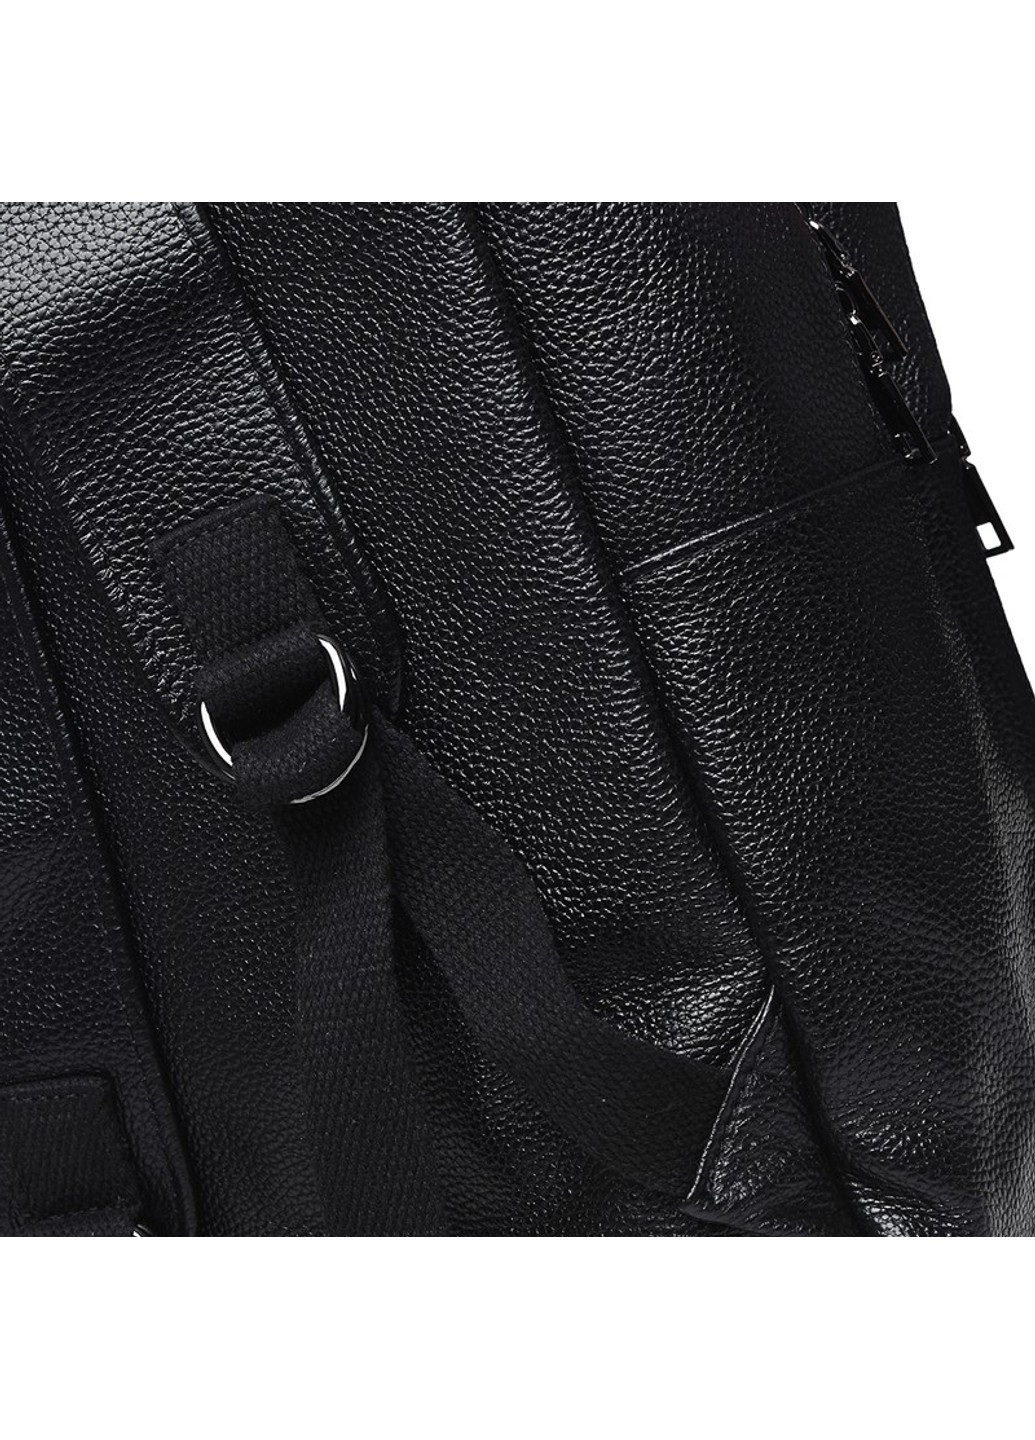 Мужской кожаный рюкзак k1336-black Keizer (266143556)